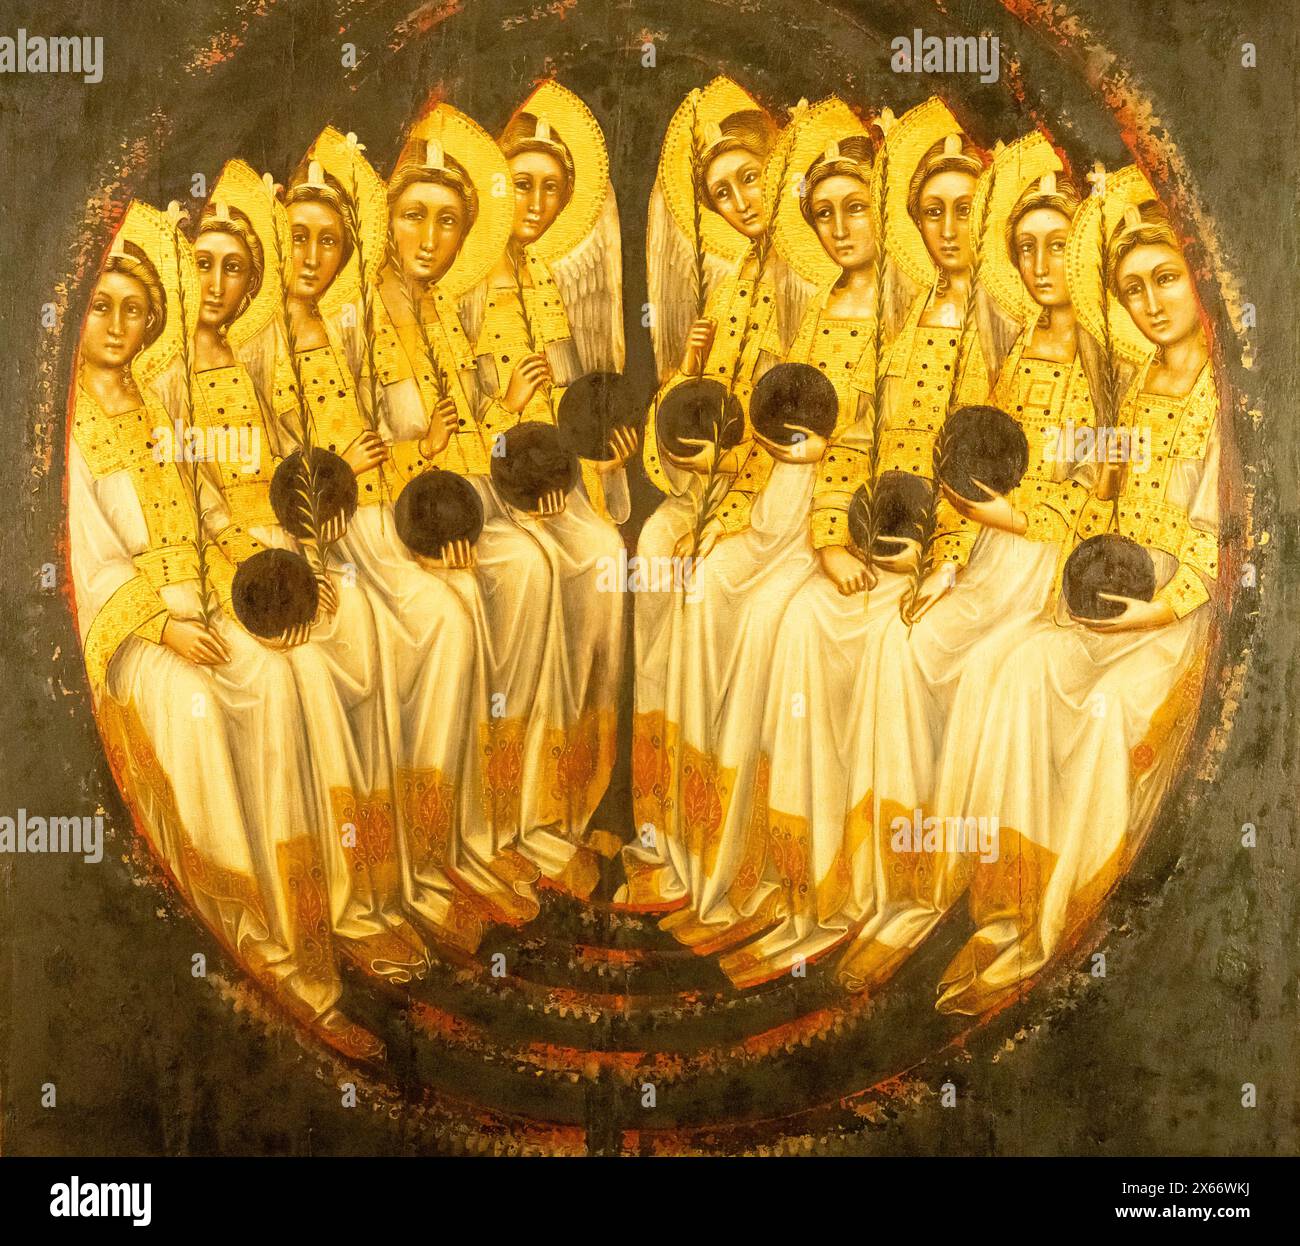 Gros plan sur la fresque médiévale montrant un groupe assis de saintes catholiques vêtues de jaune et tenant des boules Banque D'Images